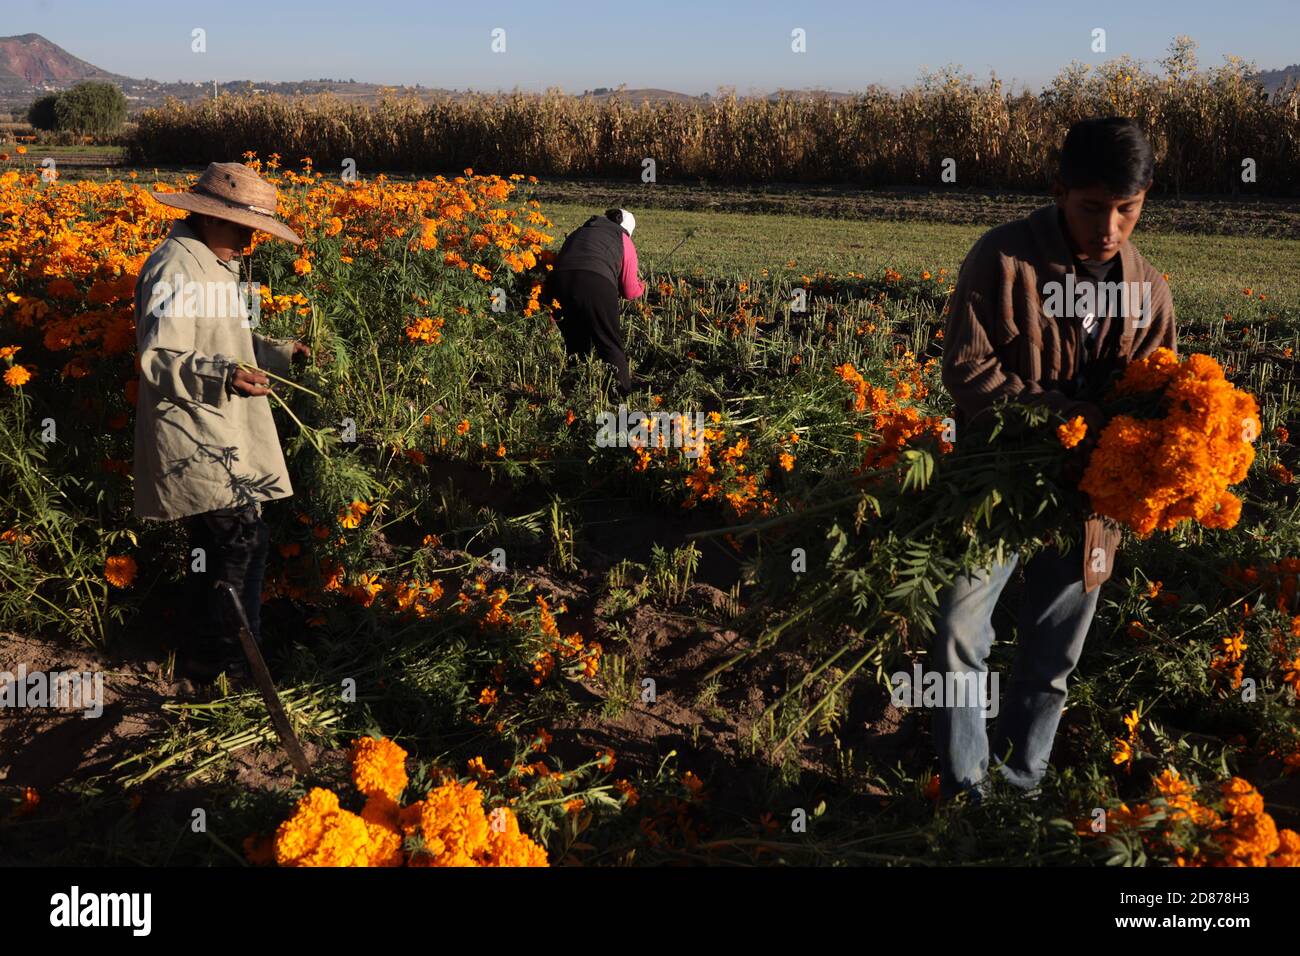 Puebla, Mexiko. Oktober 2020. Bauern ernten am 26. Oktober 2020 im mexikanischen Bundesstaat Puebla cempasuchil (mexikanische Ringelblume) Blumen. Die Cempasuchil Blume wird in Mexiko verwendet, um den Tag der Toten zu feiern. Quelle: David Peinado/Xinhua/Alamy Live News Stockfoto